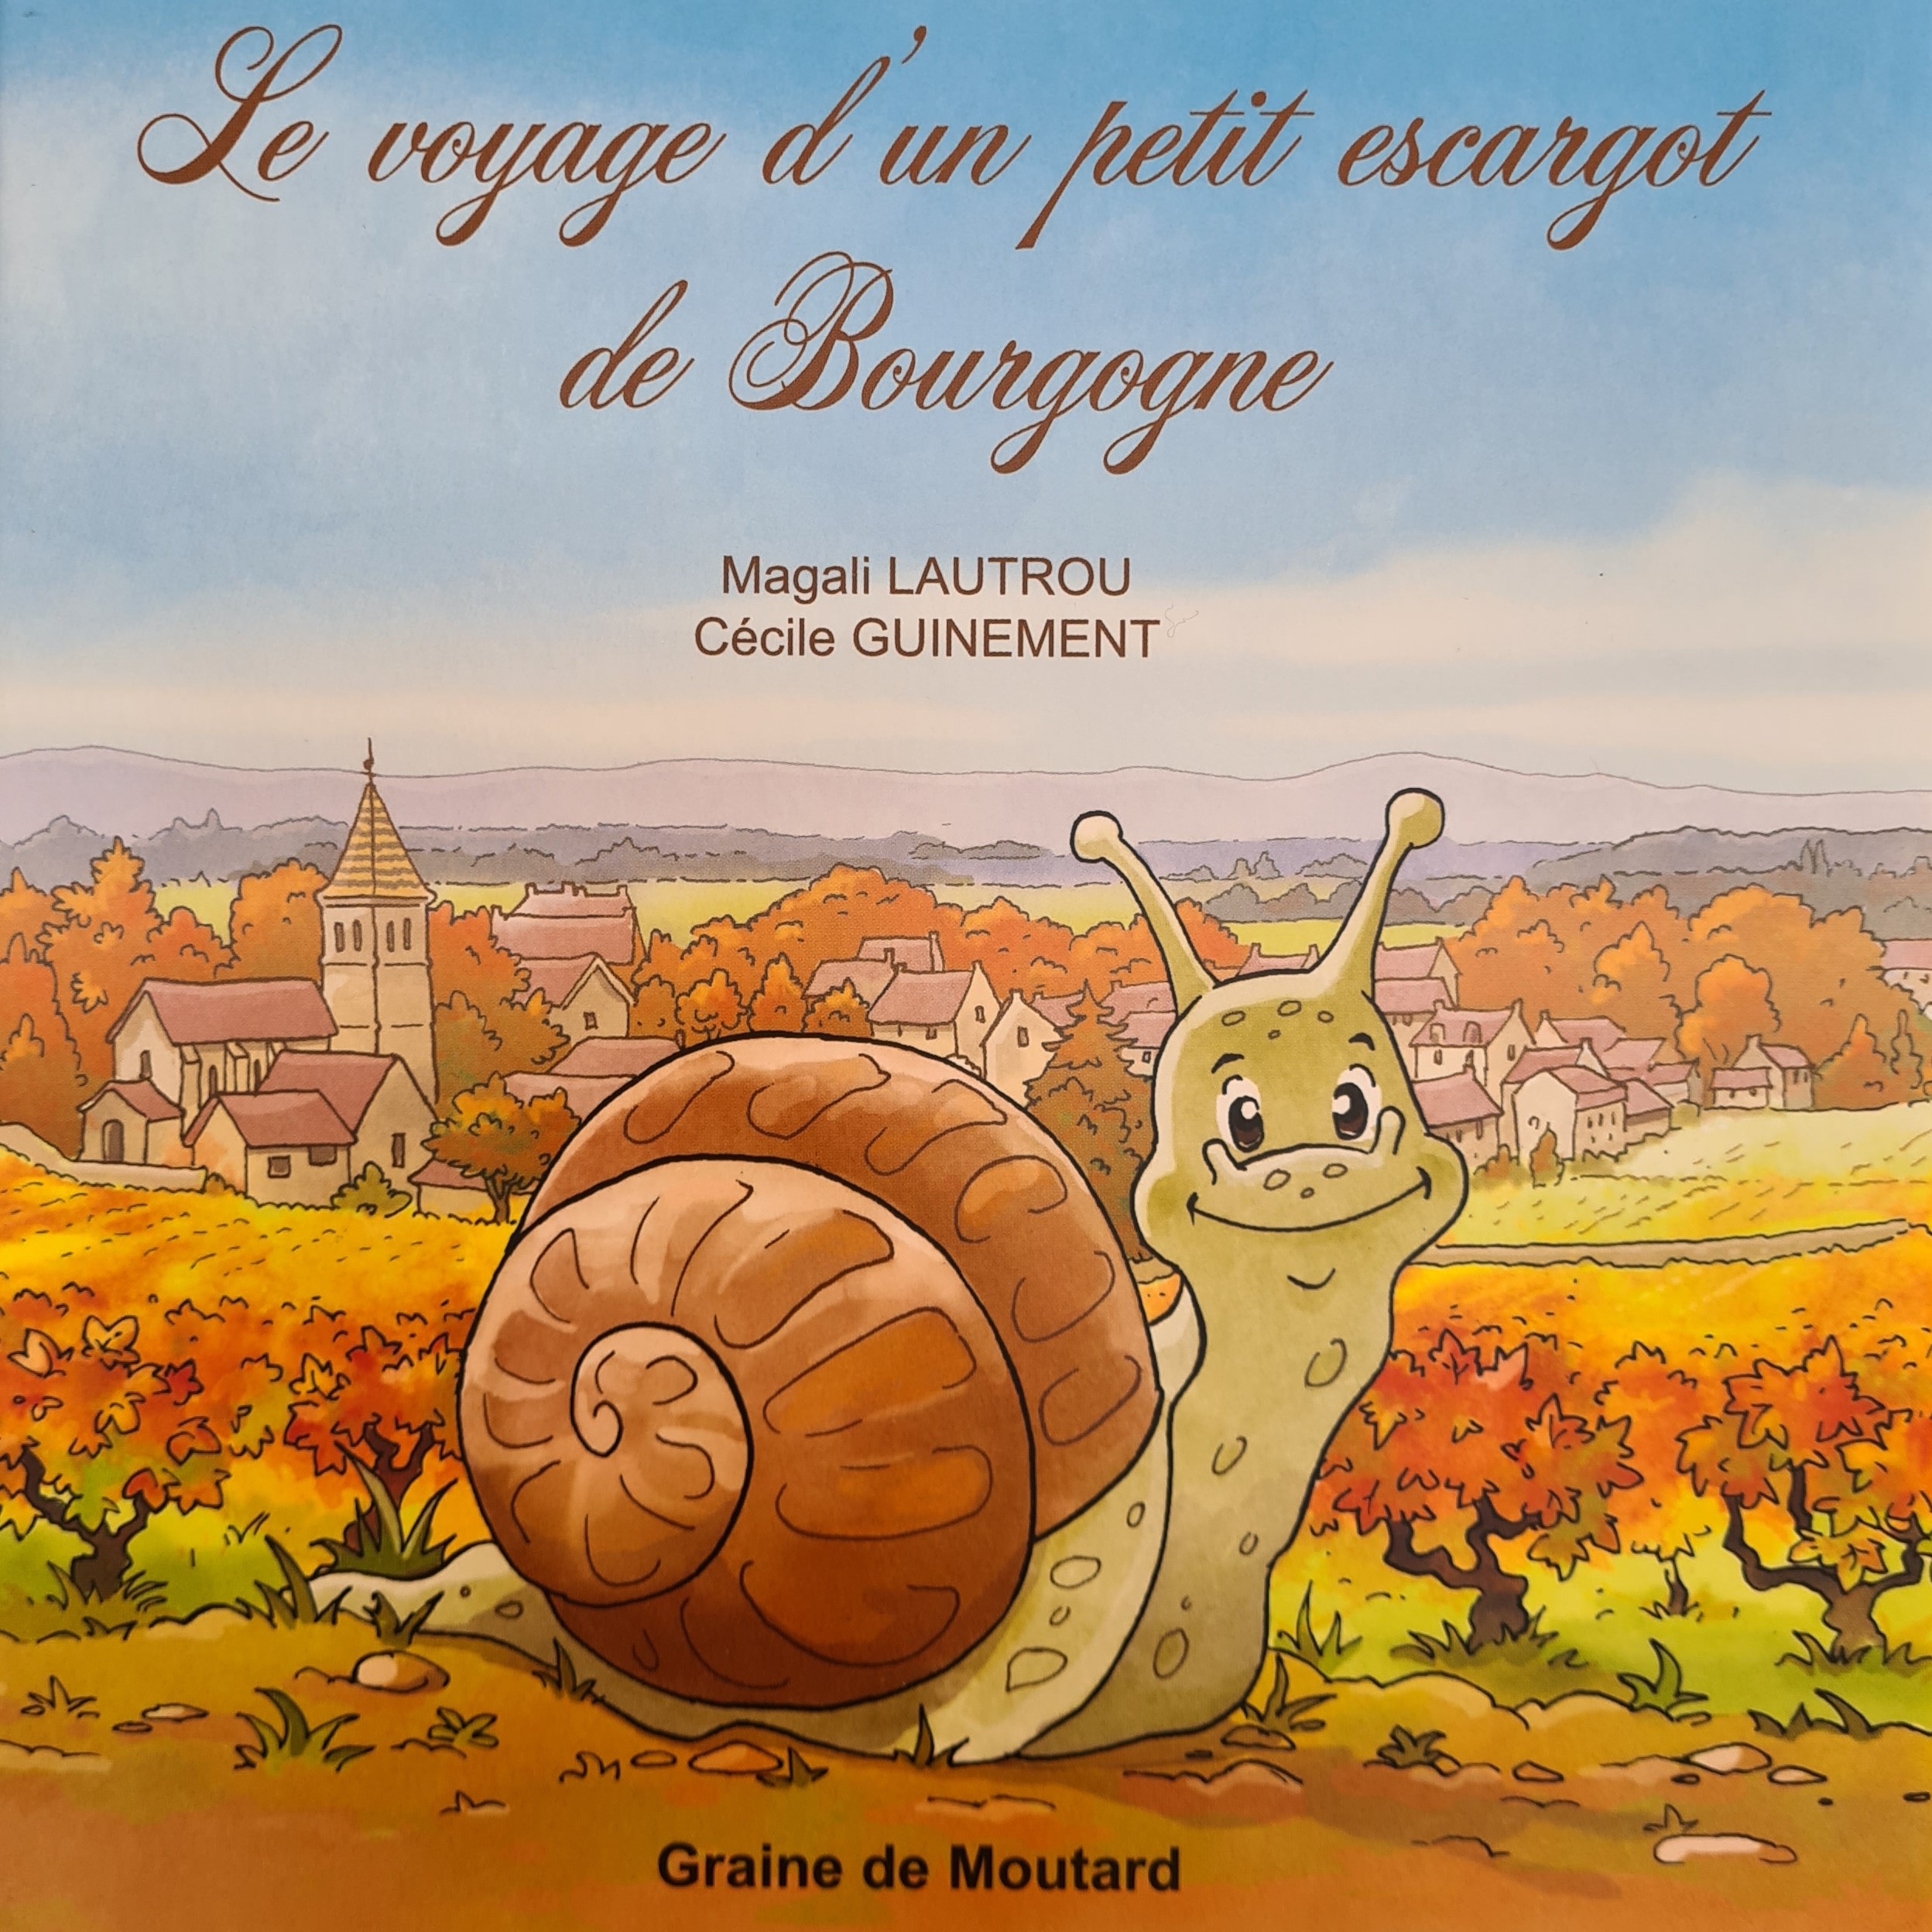 Le voyage d’un petit escargot de Bourgogne